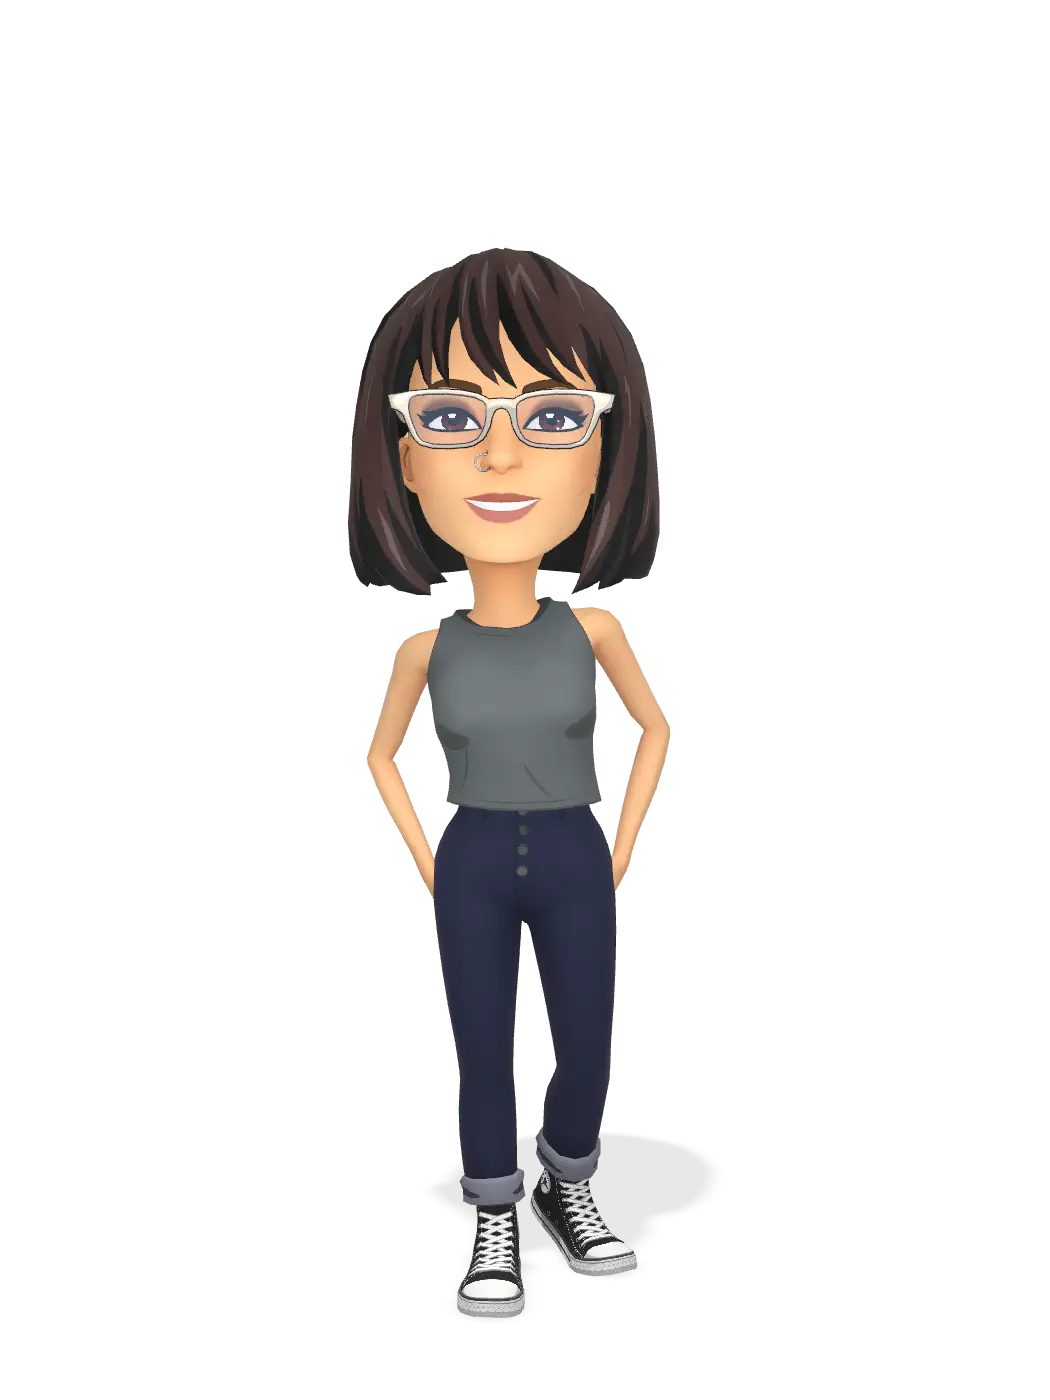 3D Bitmoji for kyleighmeaghan avatar